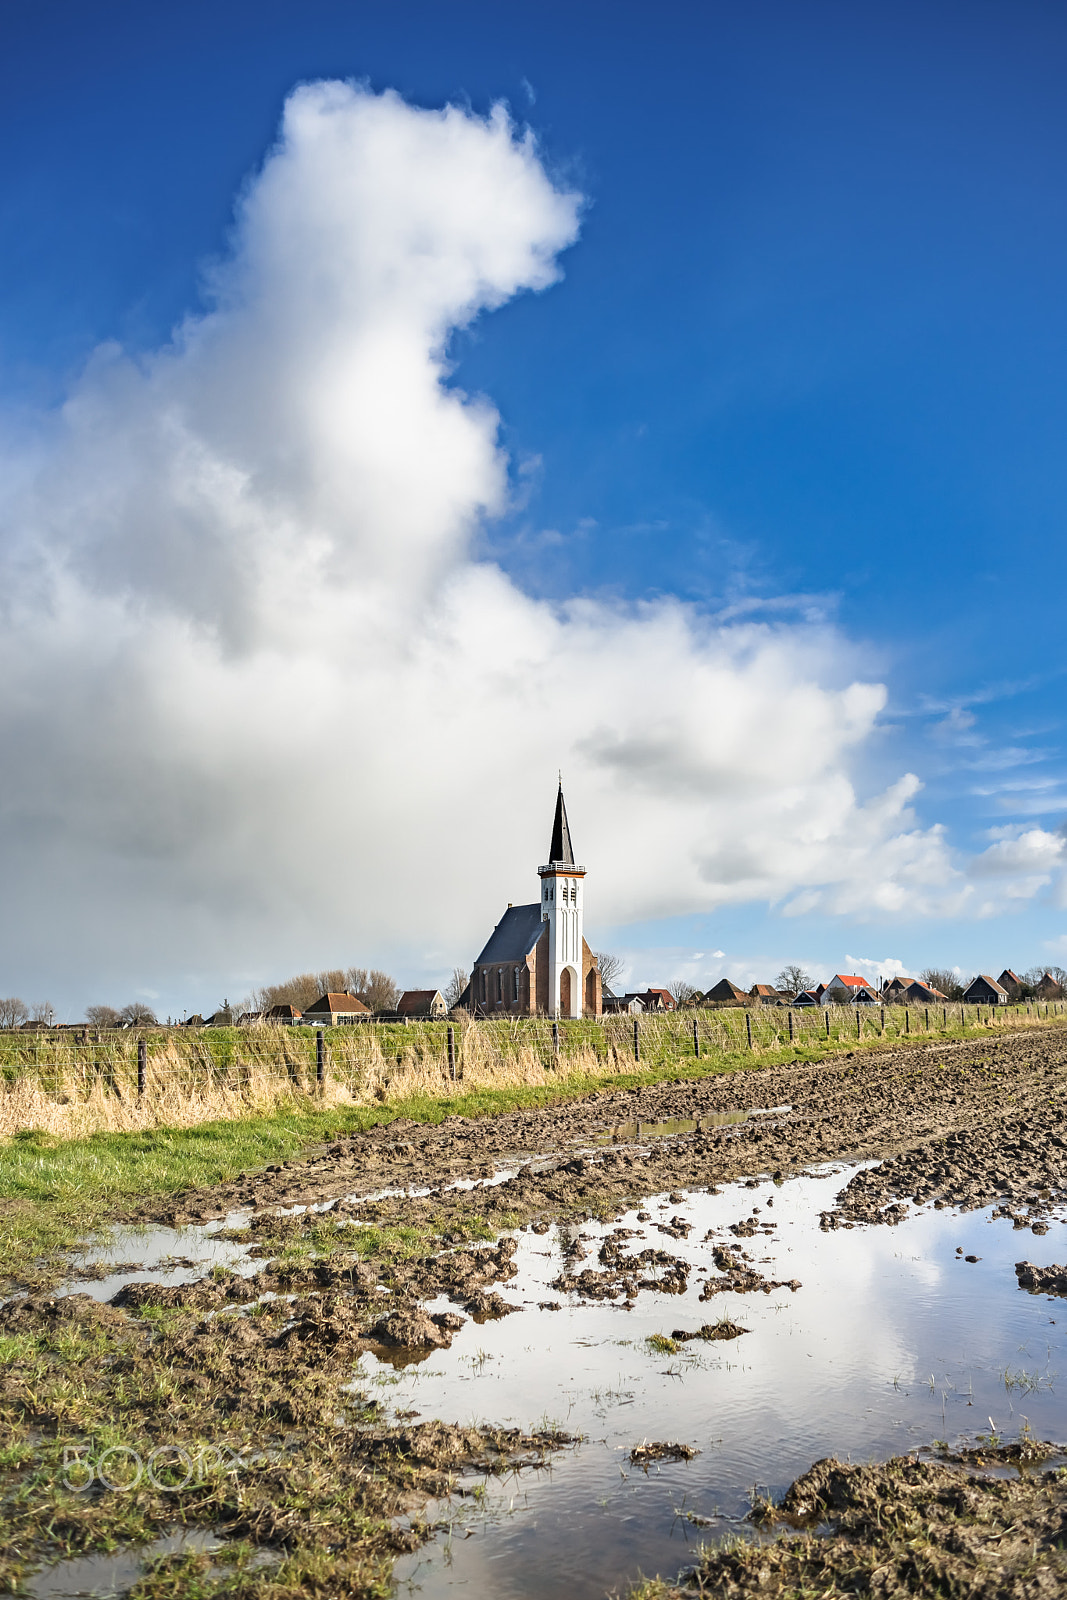 Sony Alpha DSLR-A900 + Sony 28mm F2.8 sample photo. Old dutch church. farmland. stormy cloudy sky. texel. den hoorn. photography